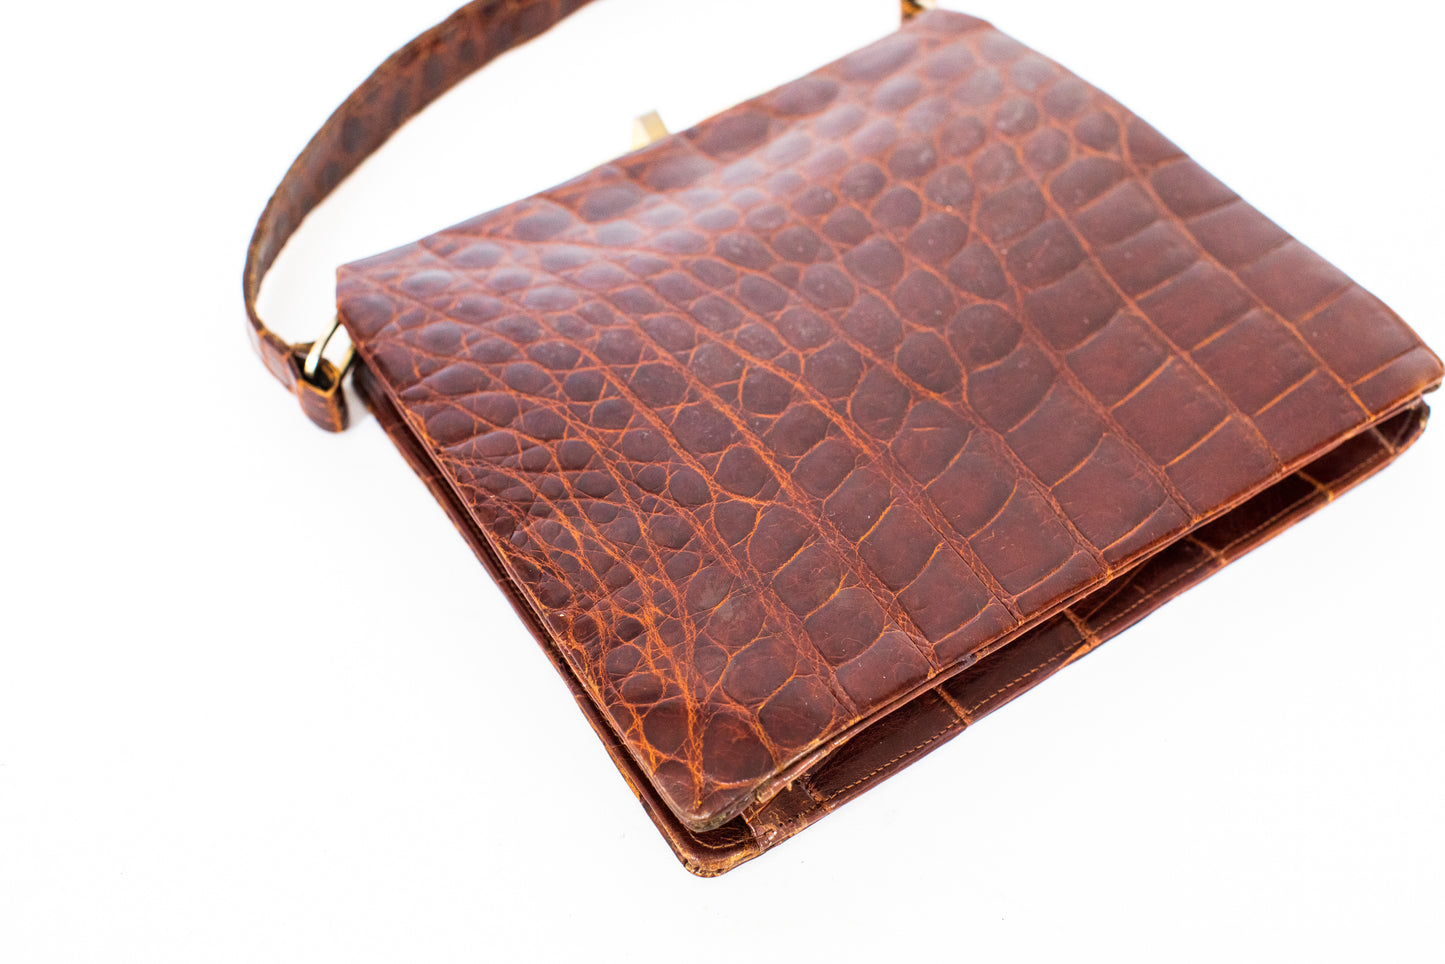 Vintage Burgundy Red Croc Leather Handbag